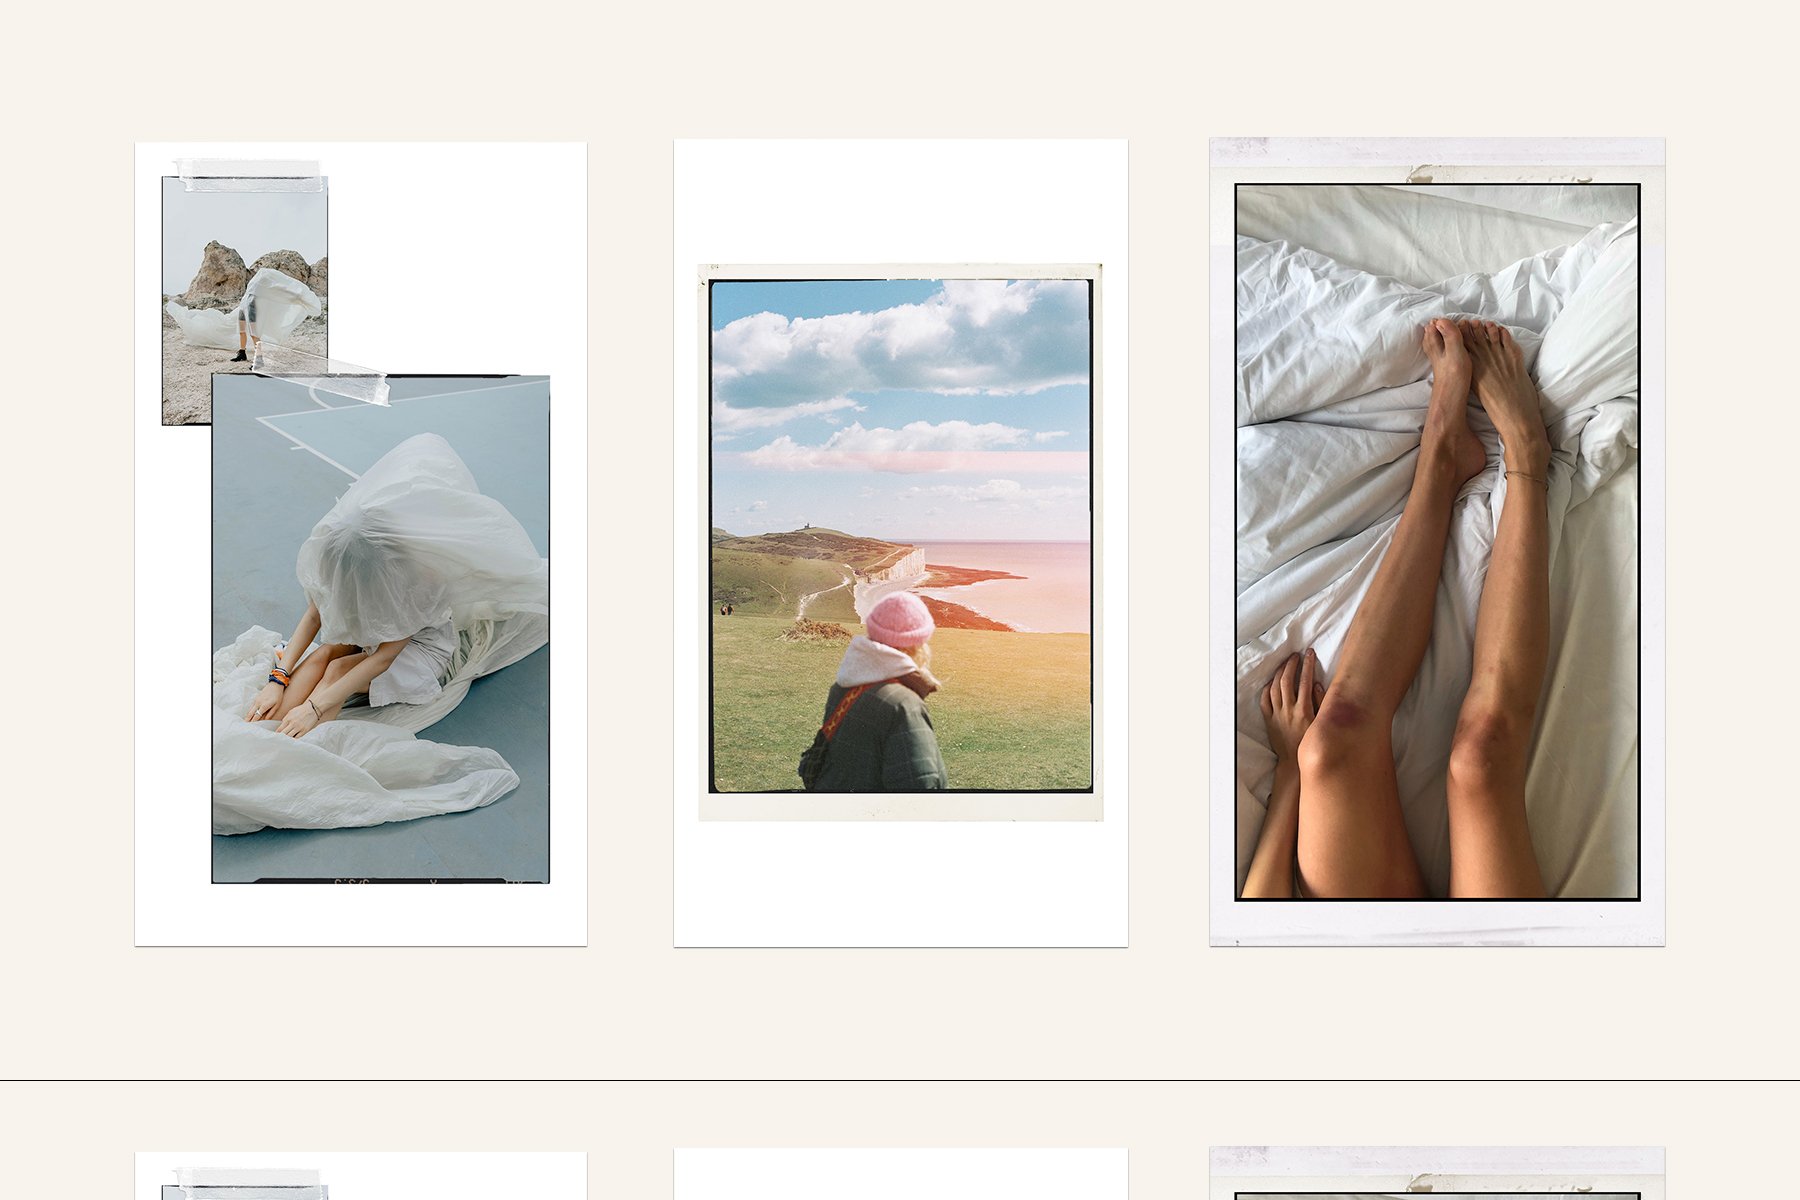 Aesthetic Film Frames Instagram Templates